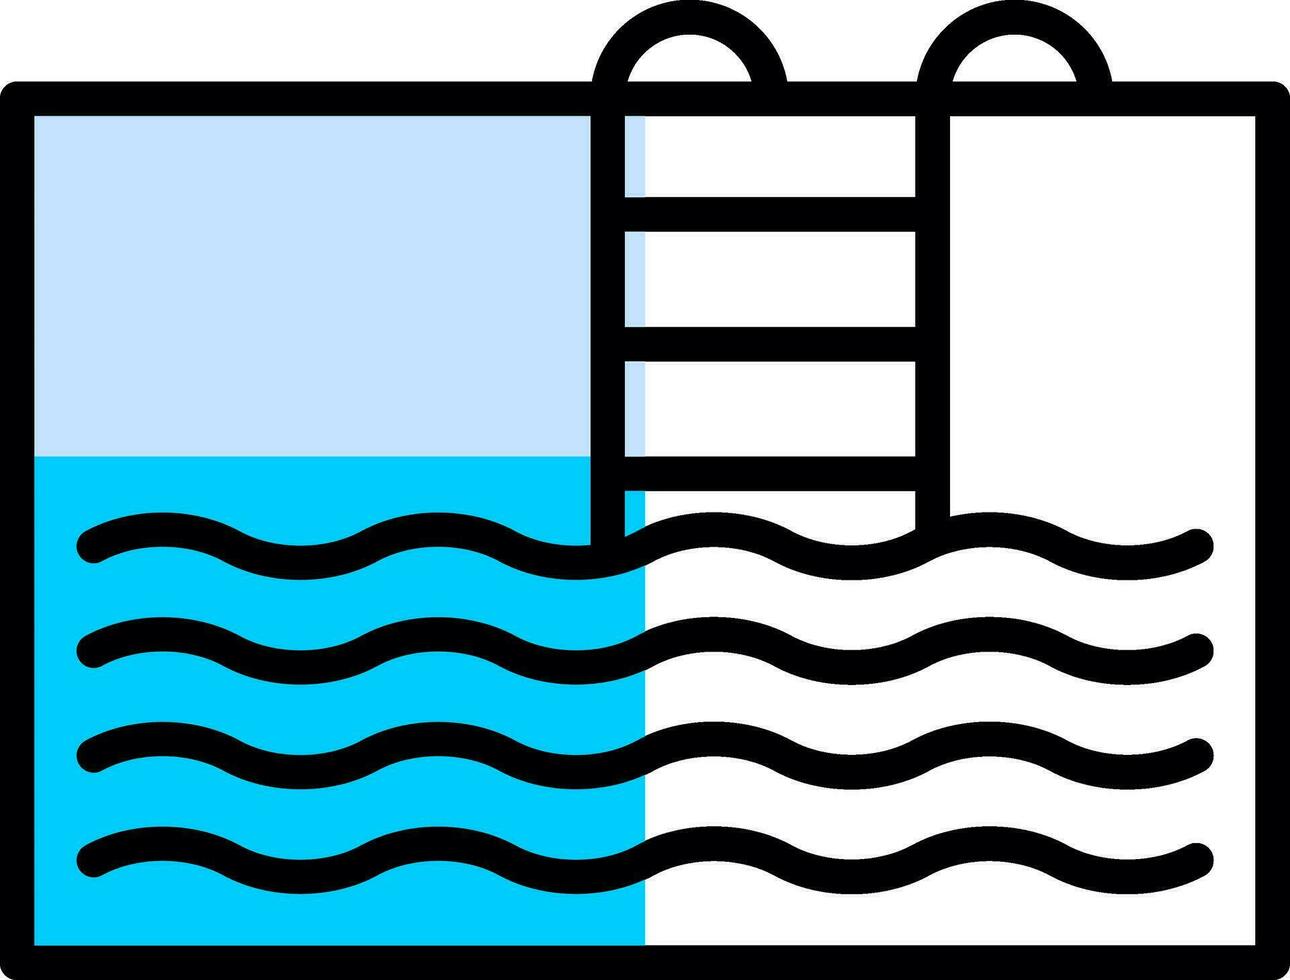 diseño de icono de vector de piscina